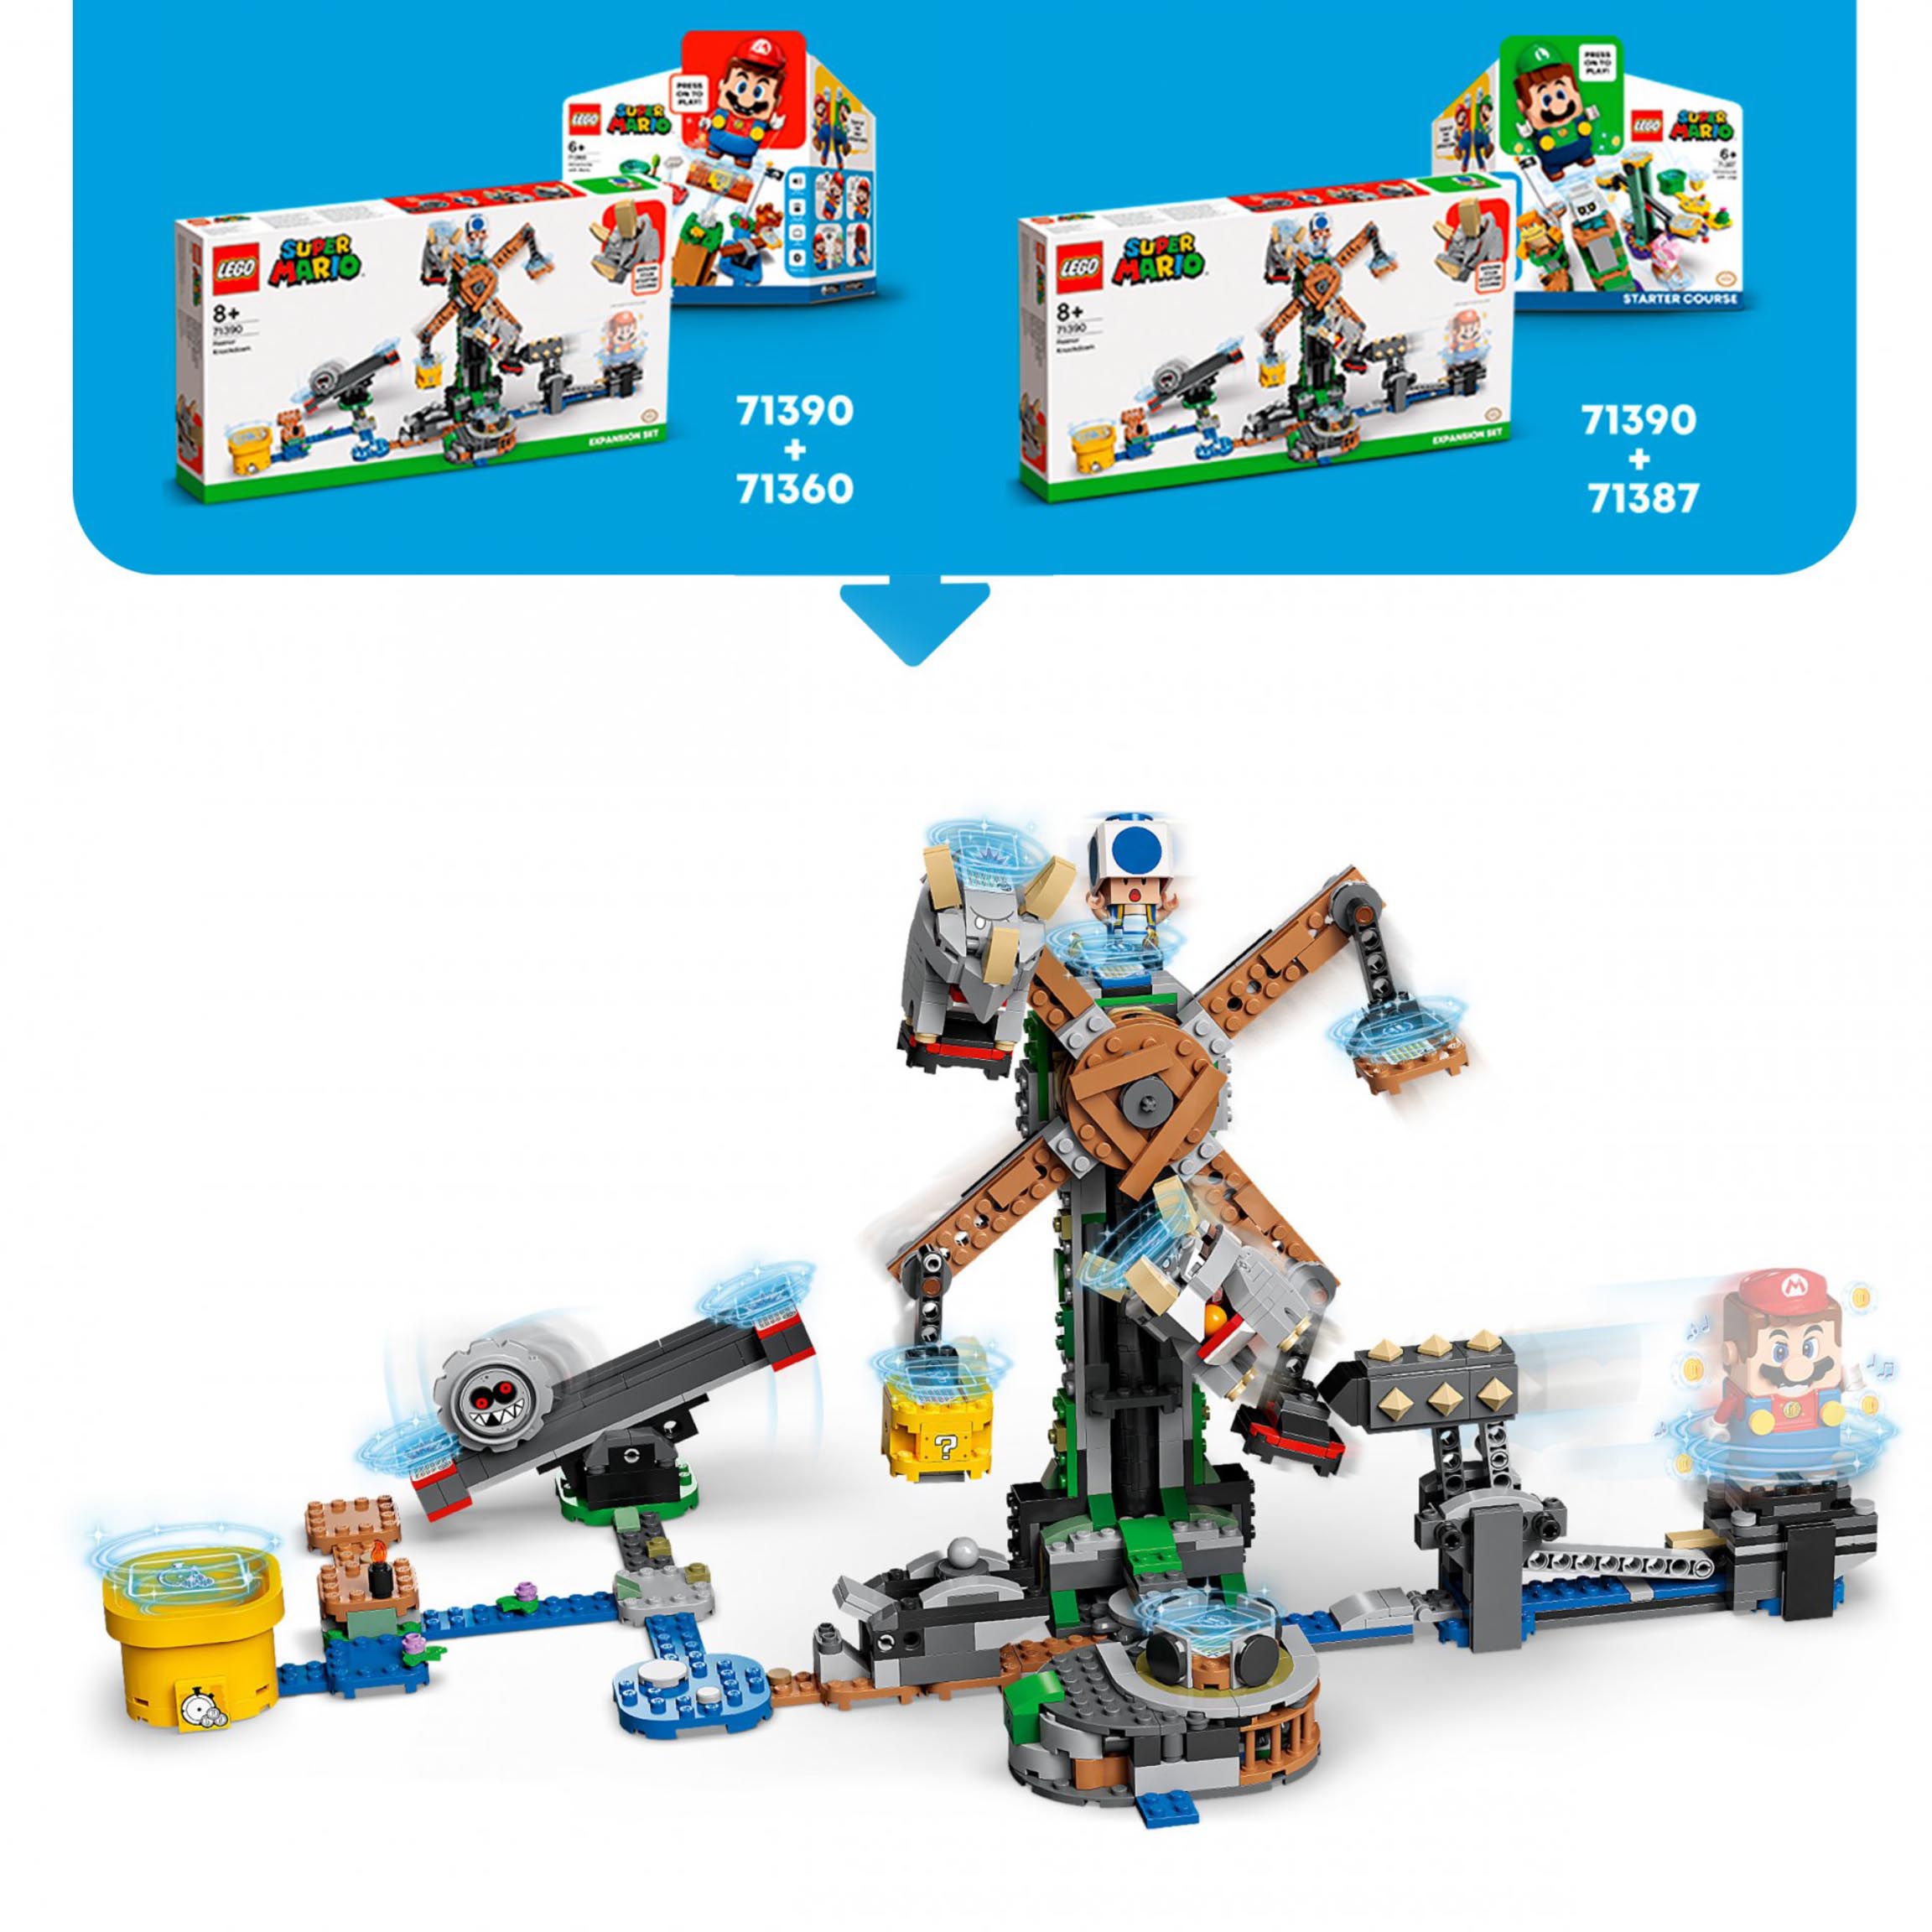 LEGO Super Mario L'Abbattimento dei Reznor - Pack di Espansione, Giocattoli da 71390, , large